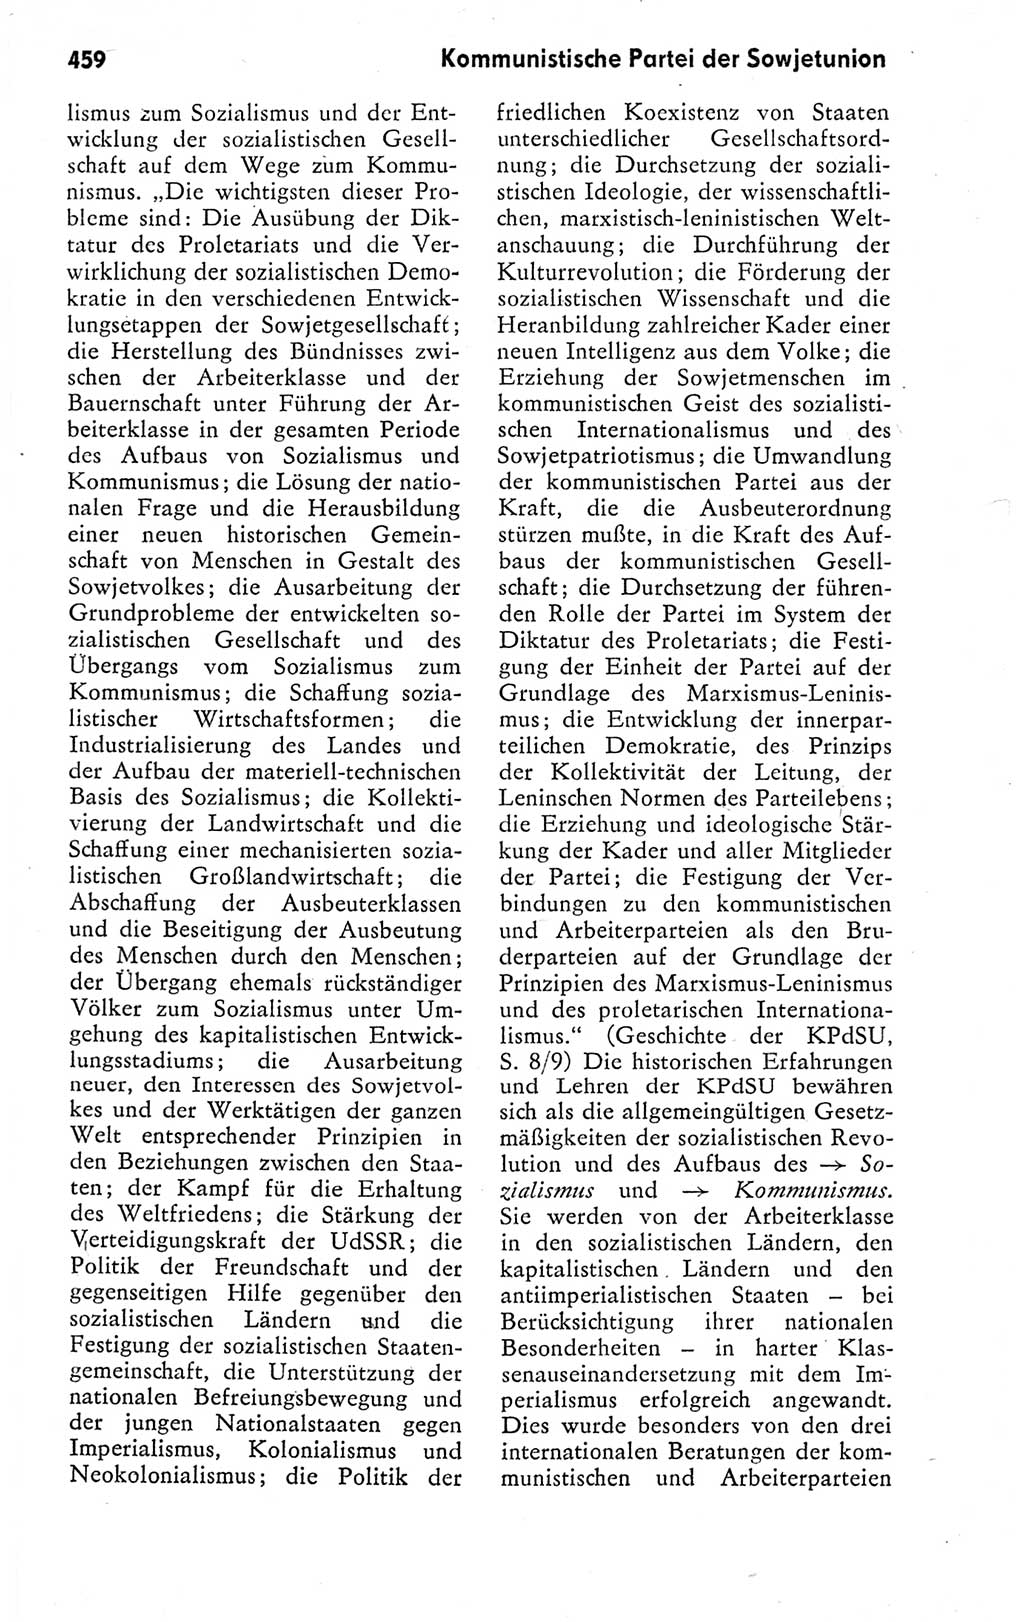 Kleines politisches Wörterbuch [Deutsche Demokratische Republik (DDR)] 1978, Seite 459 (Kl. pol. Wb. DDR 1978, S. 459)